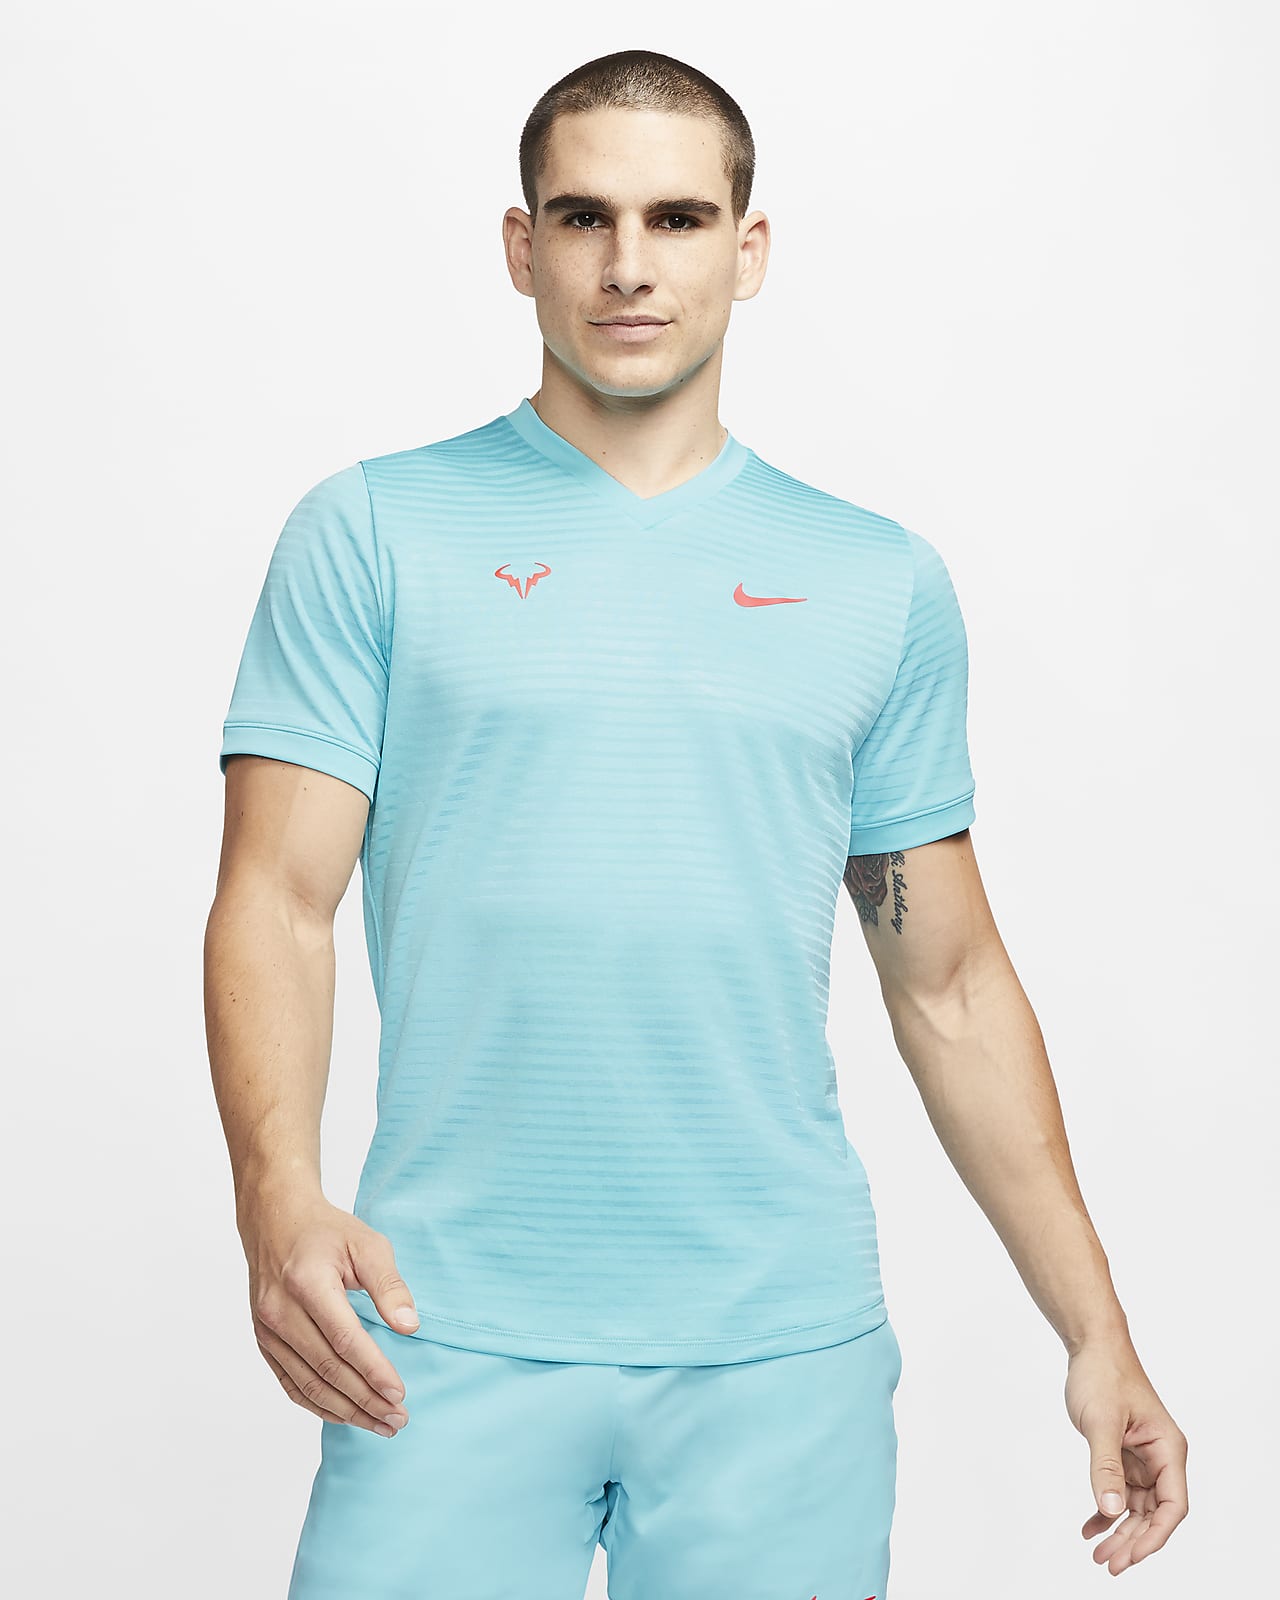 Short-Sleeve Tennis Top. Nike 